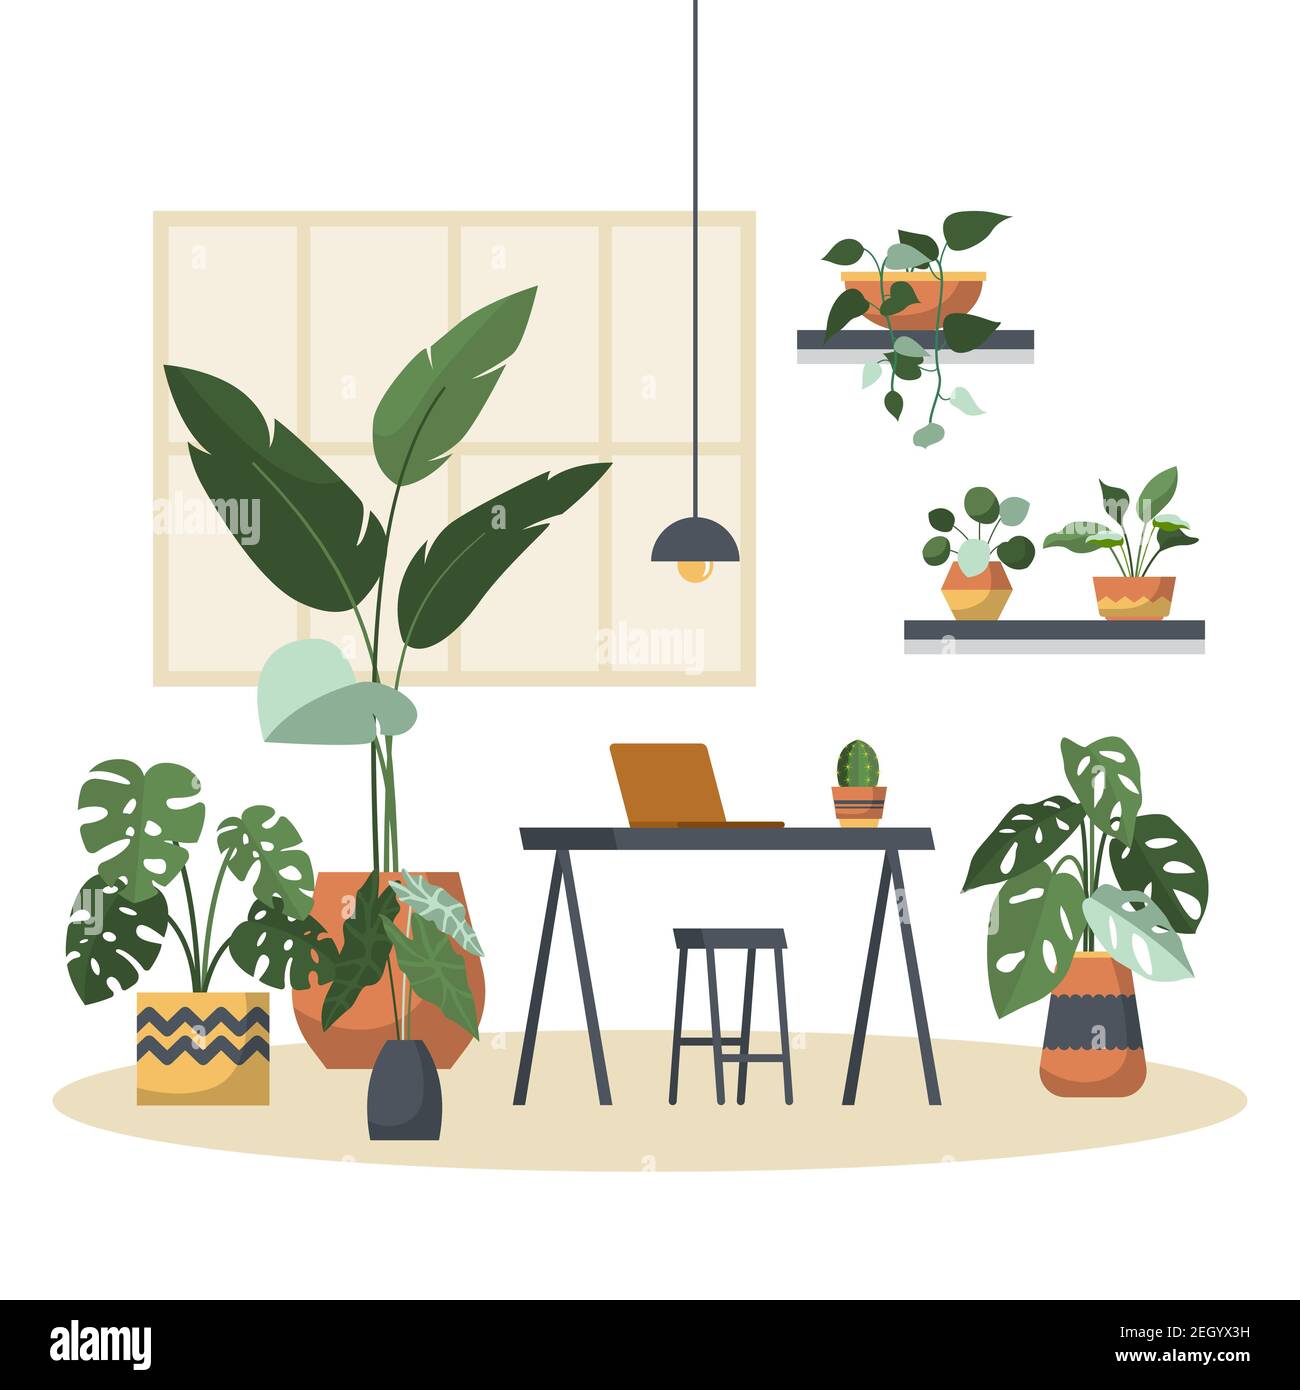 Tropische Zimmerpflanze Grüne dekorative Pflanze im Büro Arbeitsbereich Illustration Stock Vektor